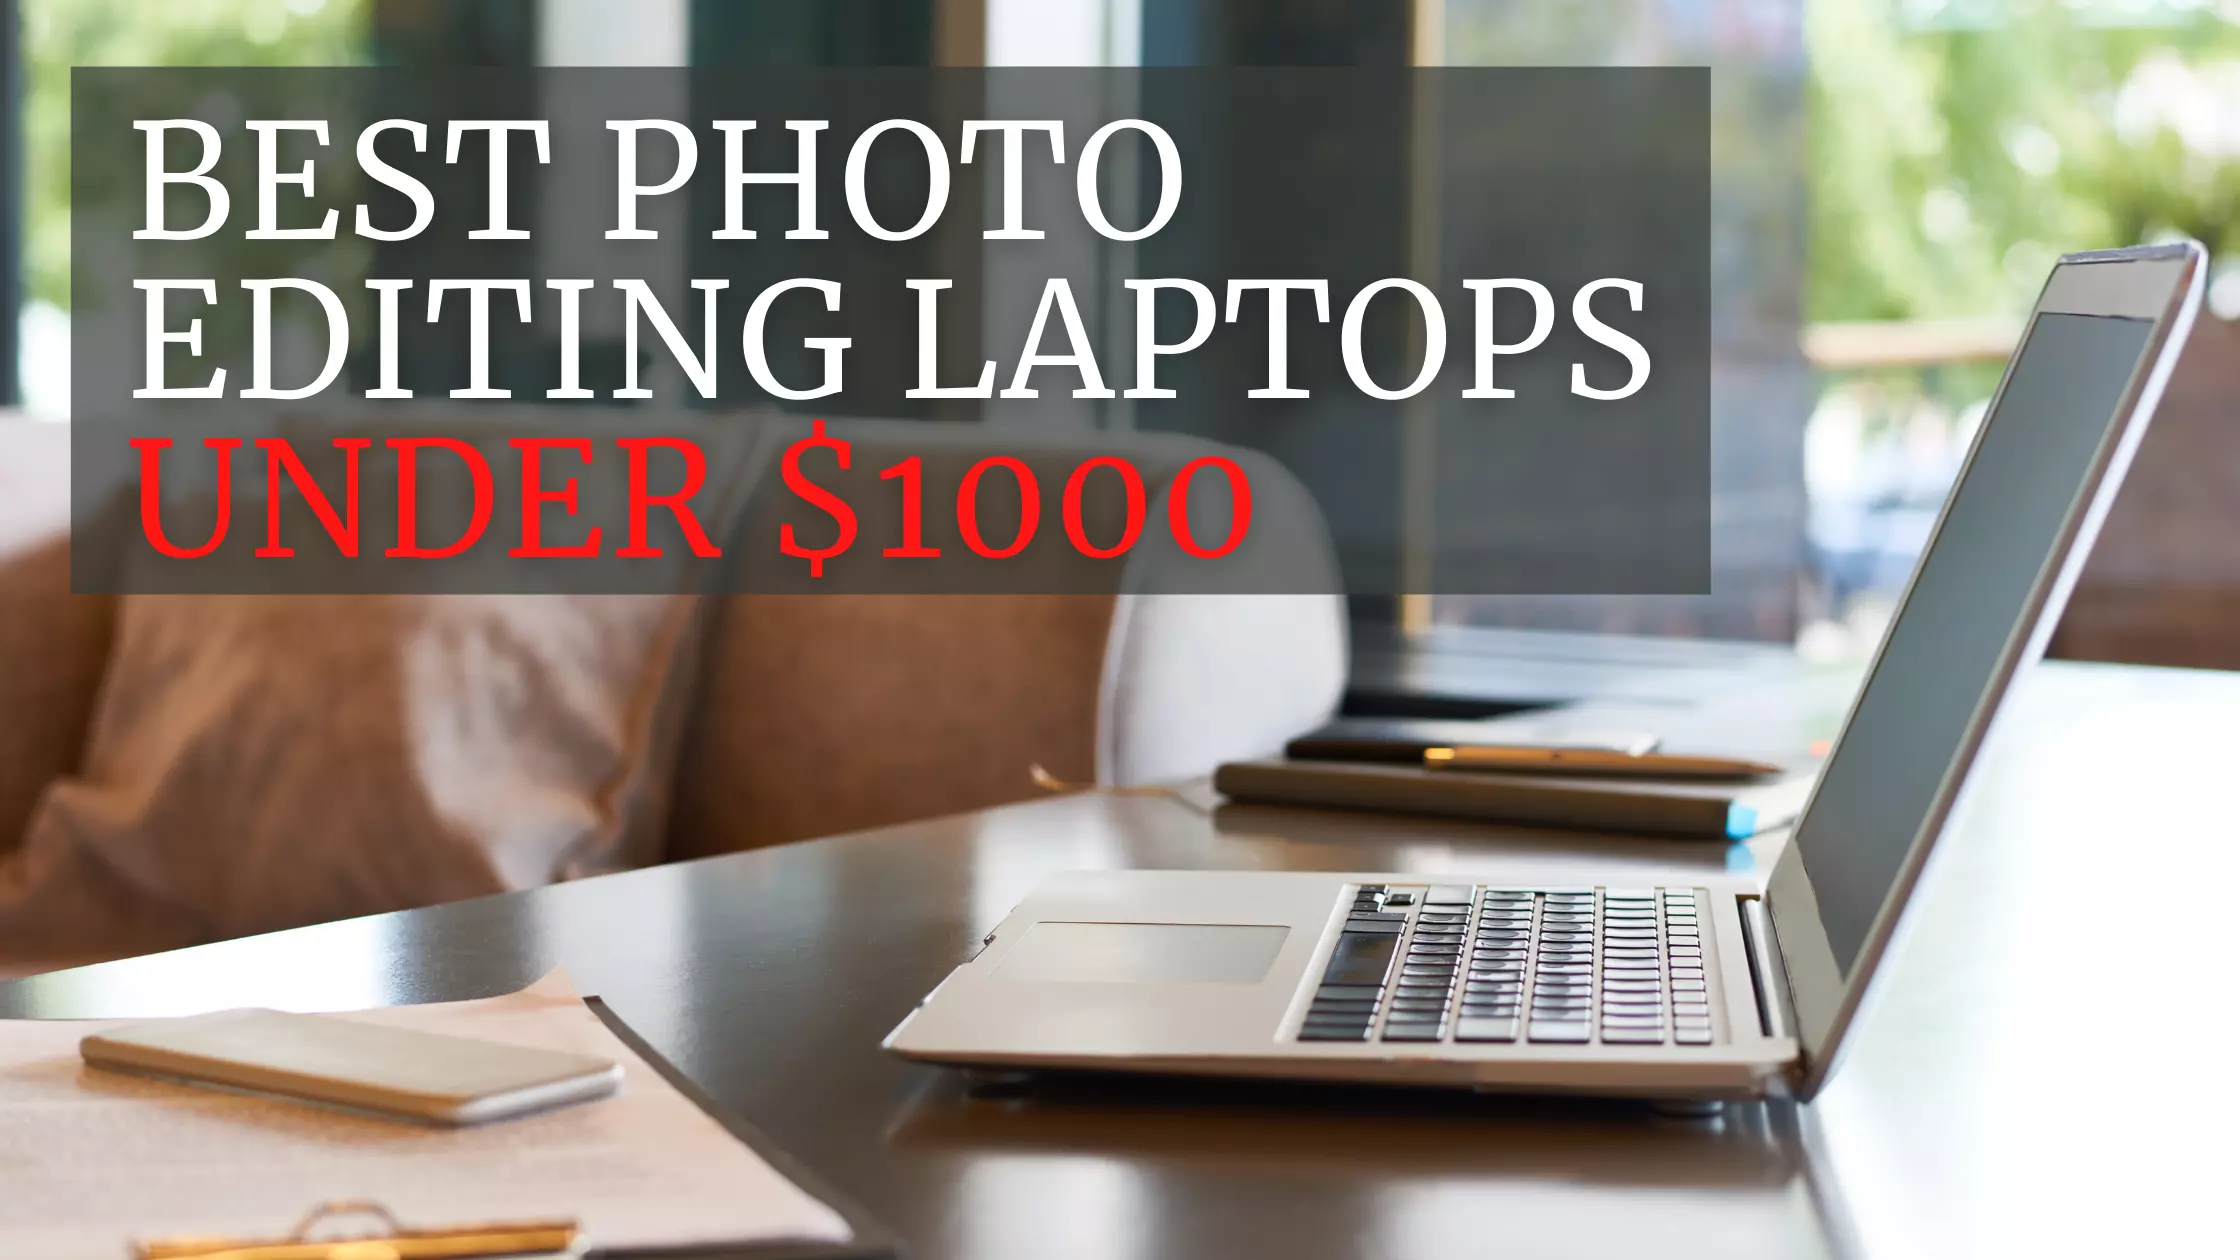 Ten best laptops under $1000